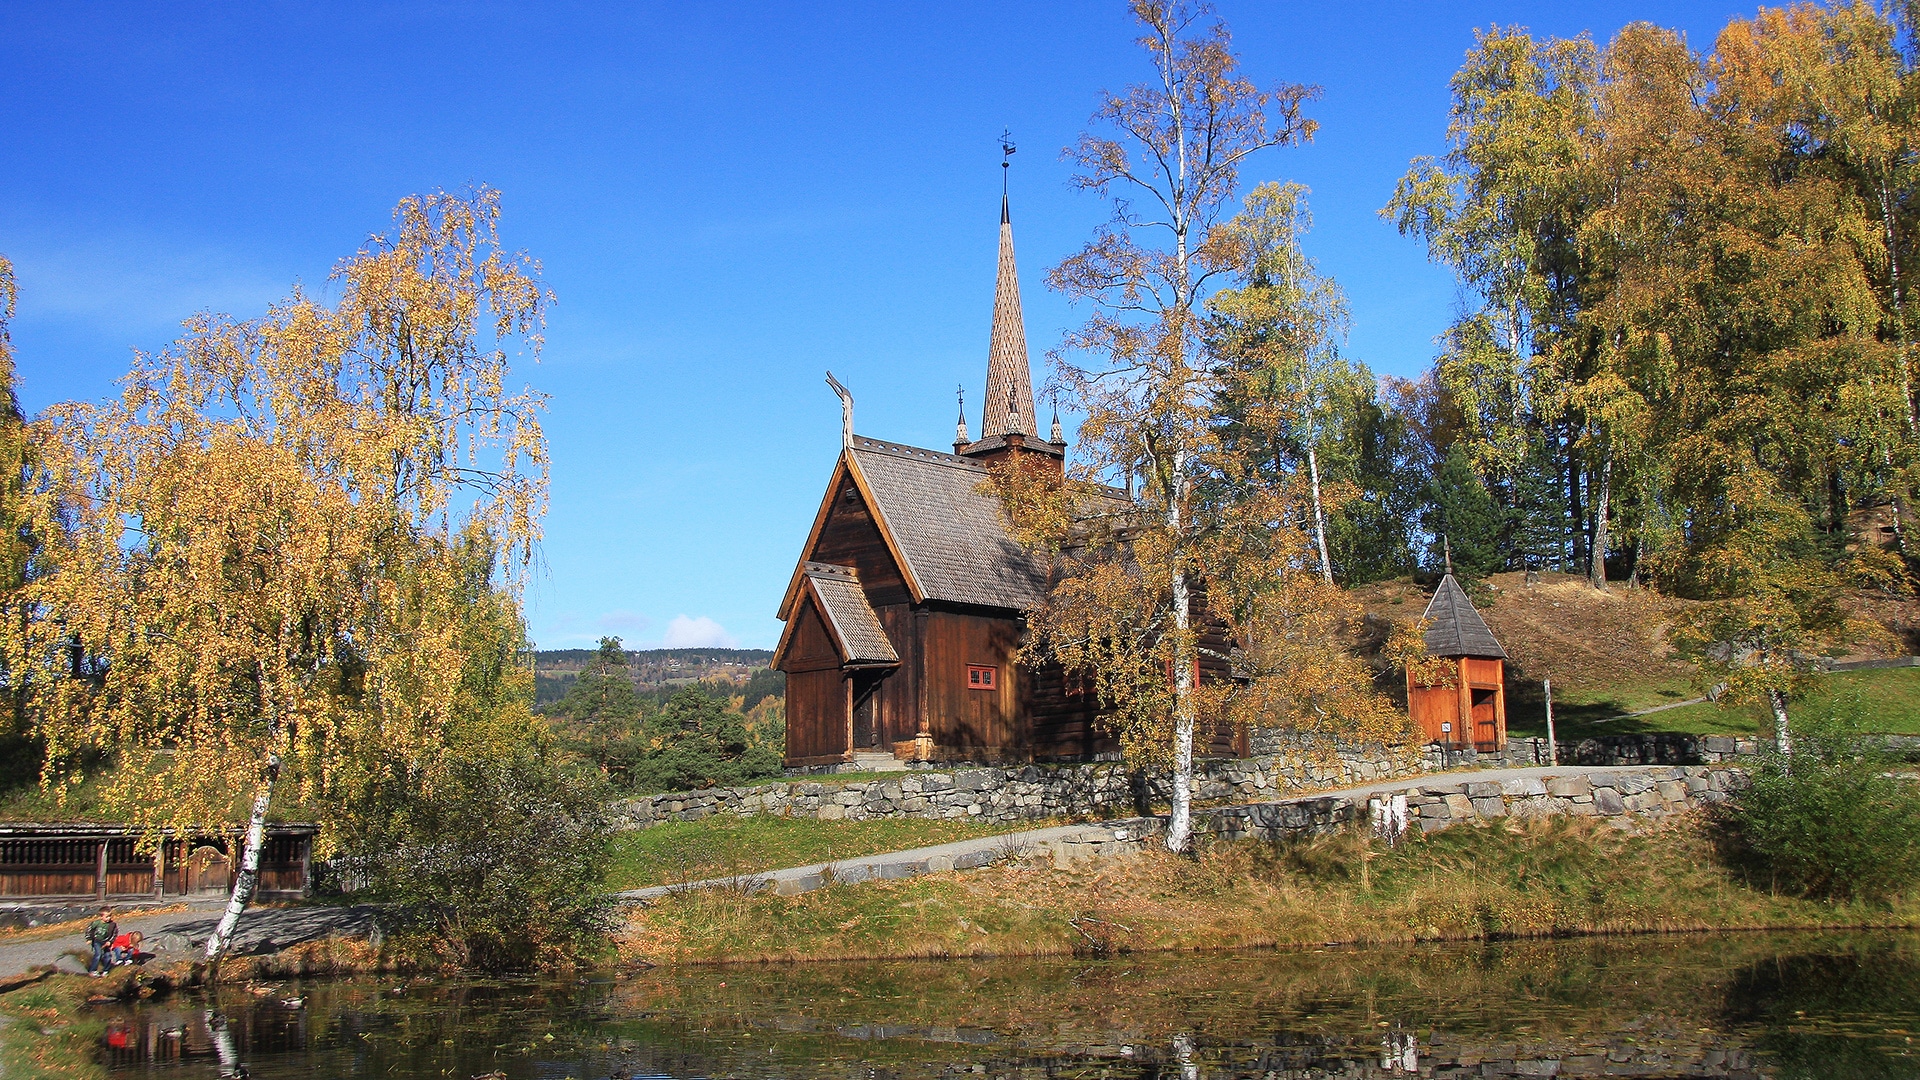 The stav church of Garmo at Maihaugen in Lillehammer in autumn.